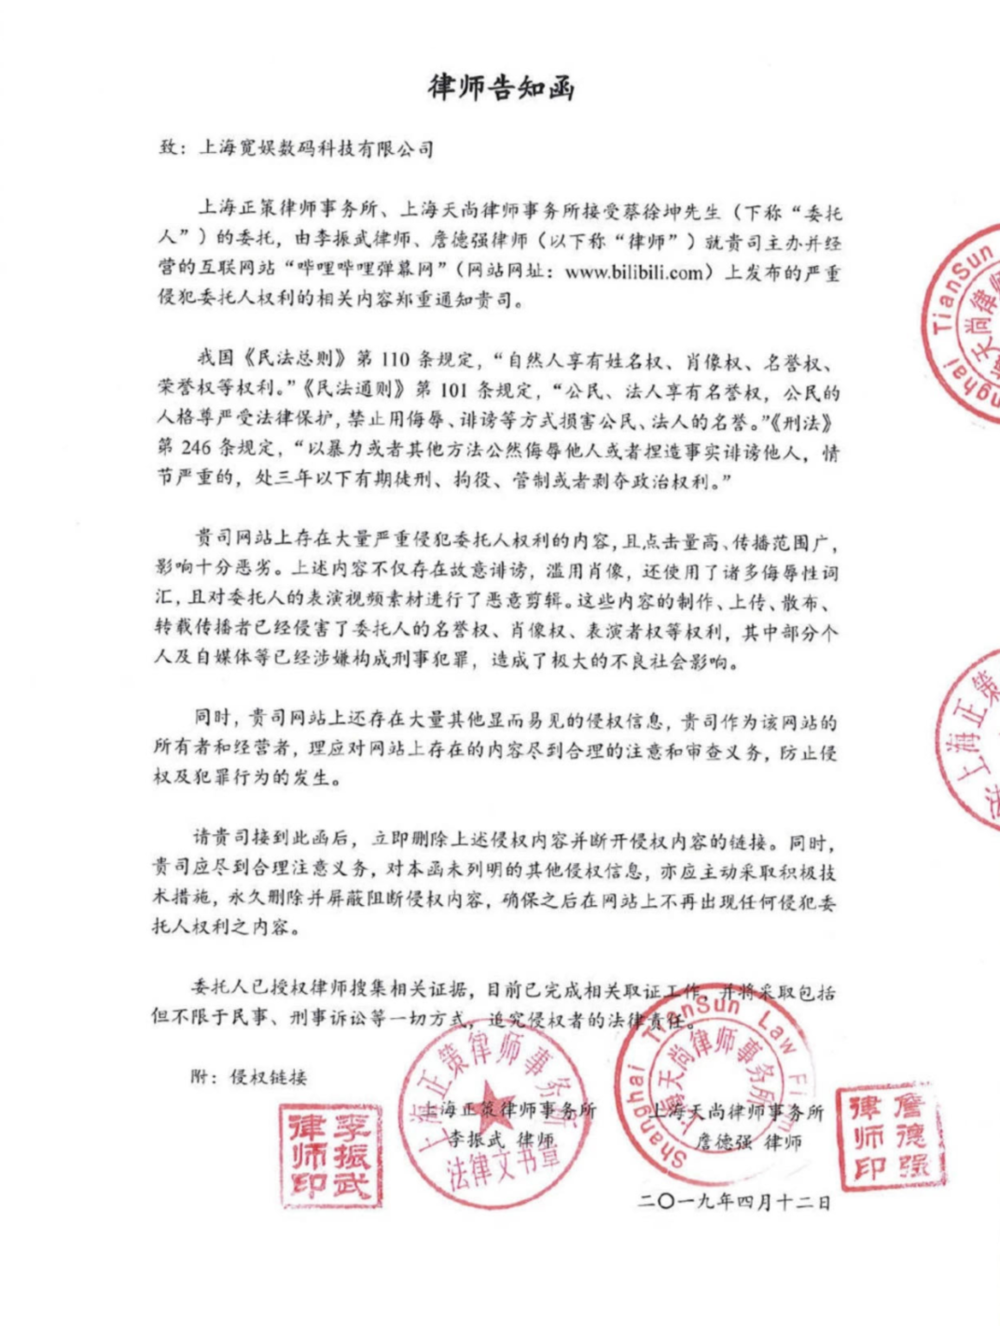 2019年4月12日，上海正策律师事务所发布律师告知函，称B站上存在大量严重侵犯蔡徐坤权利的内容。/微博<br>